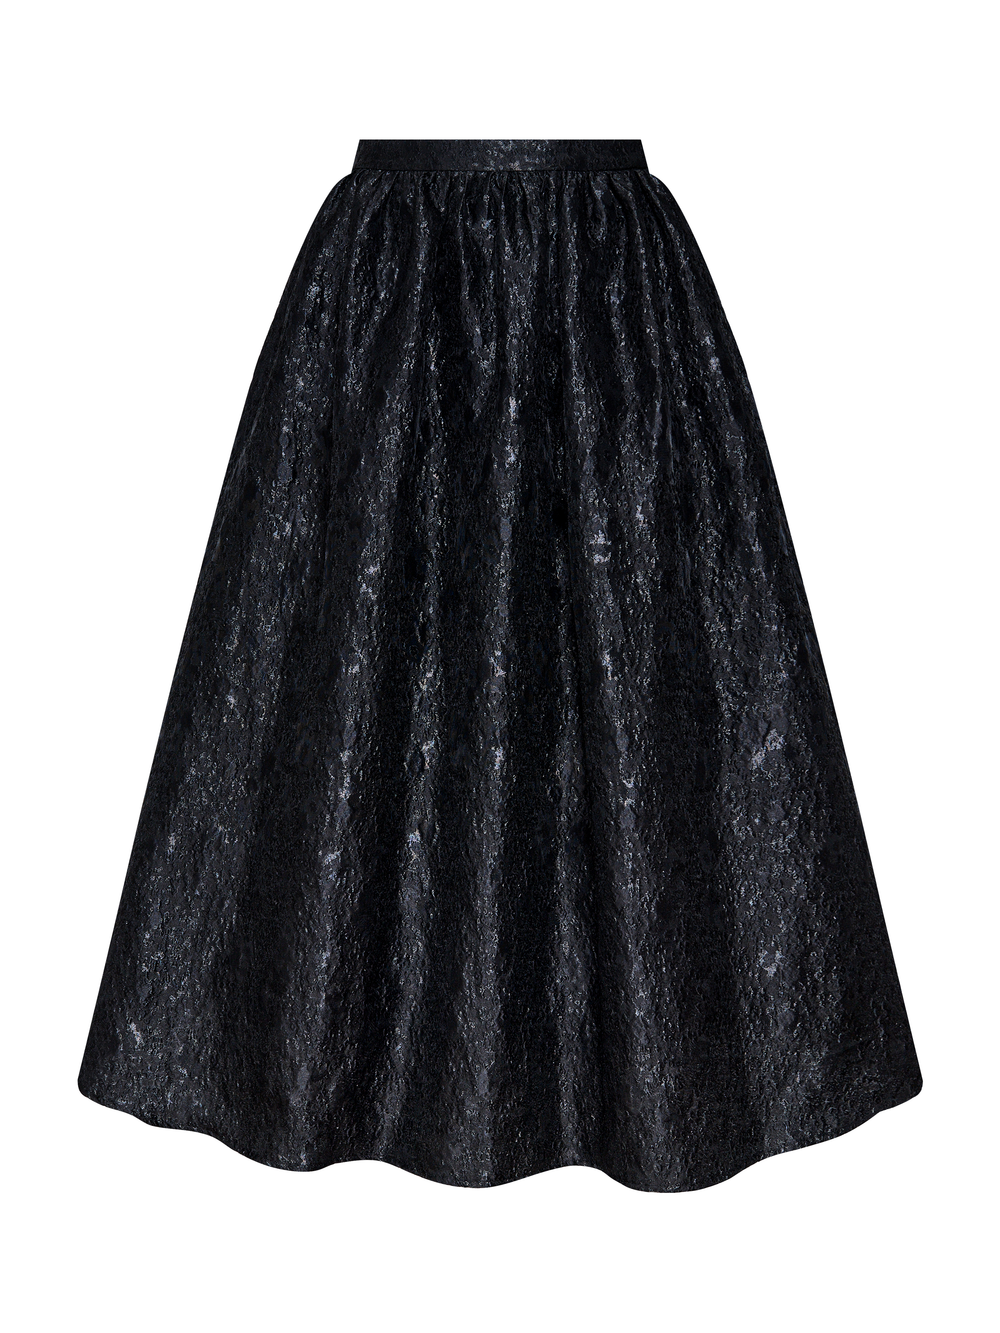 Noir skirt